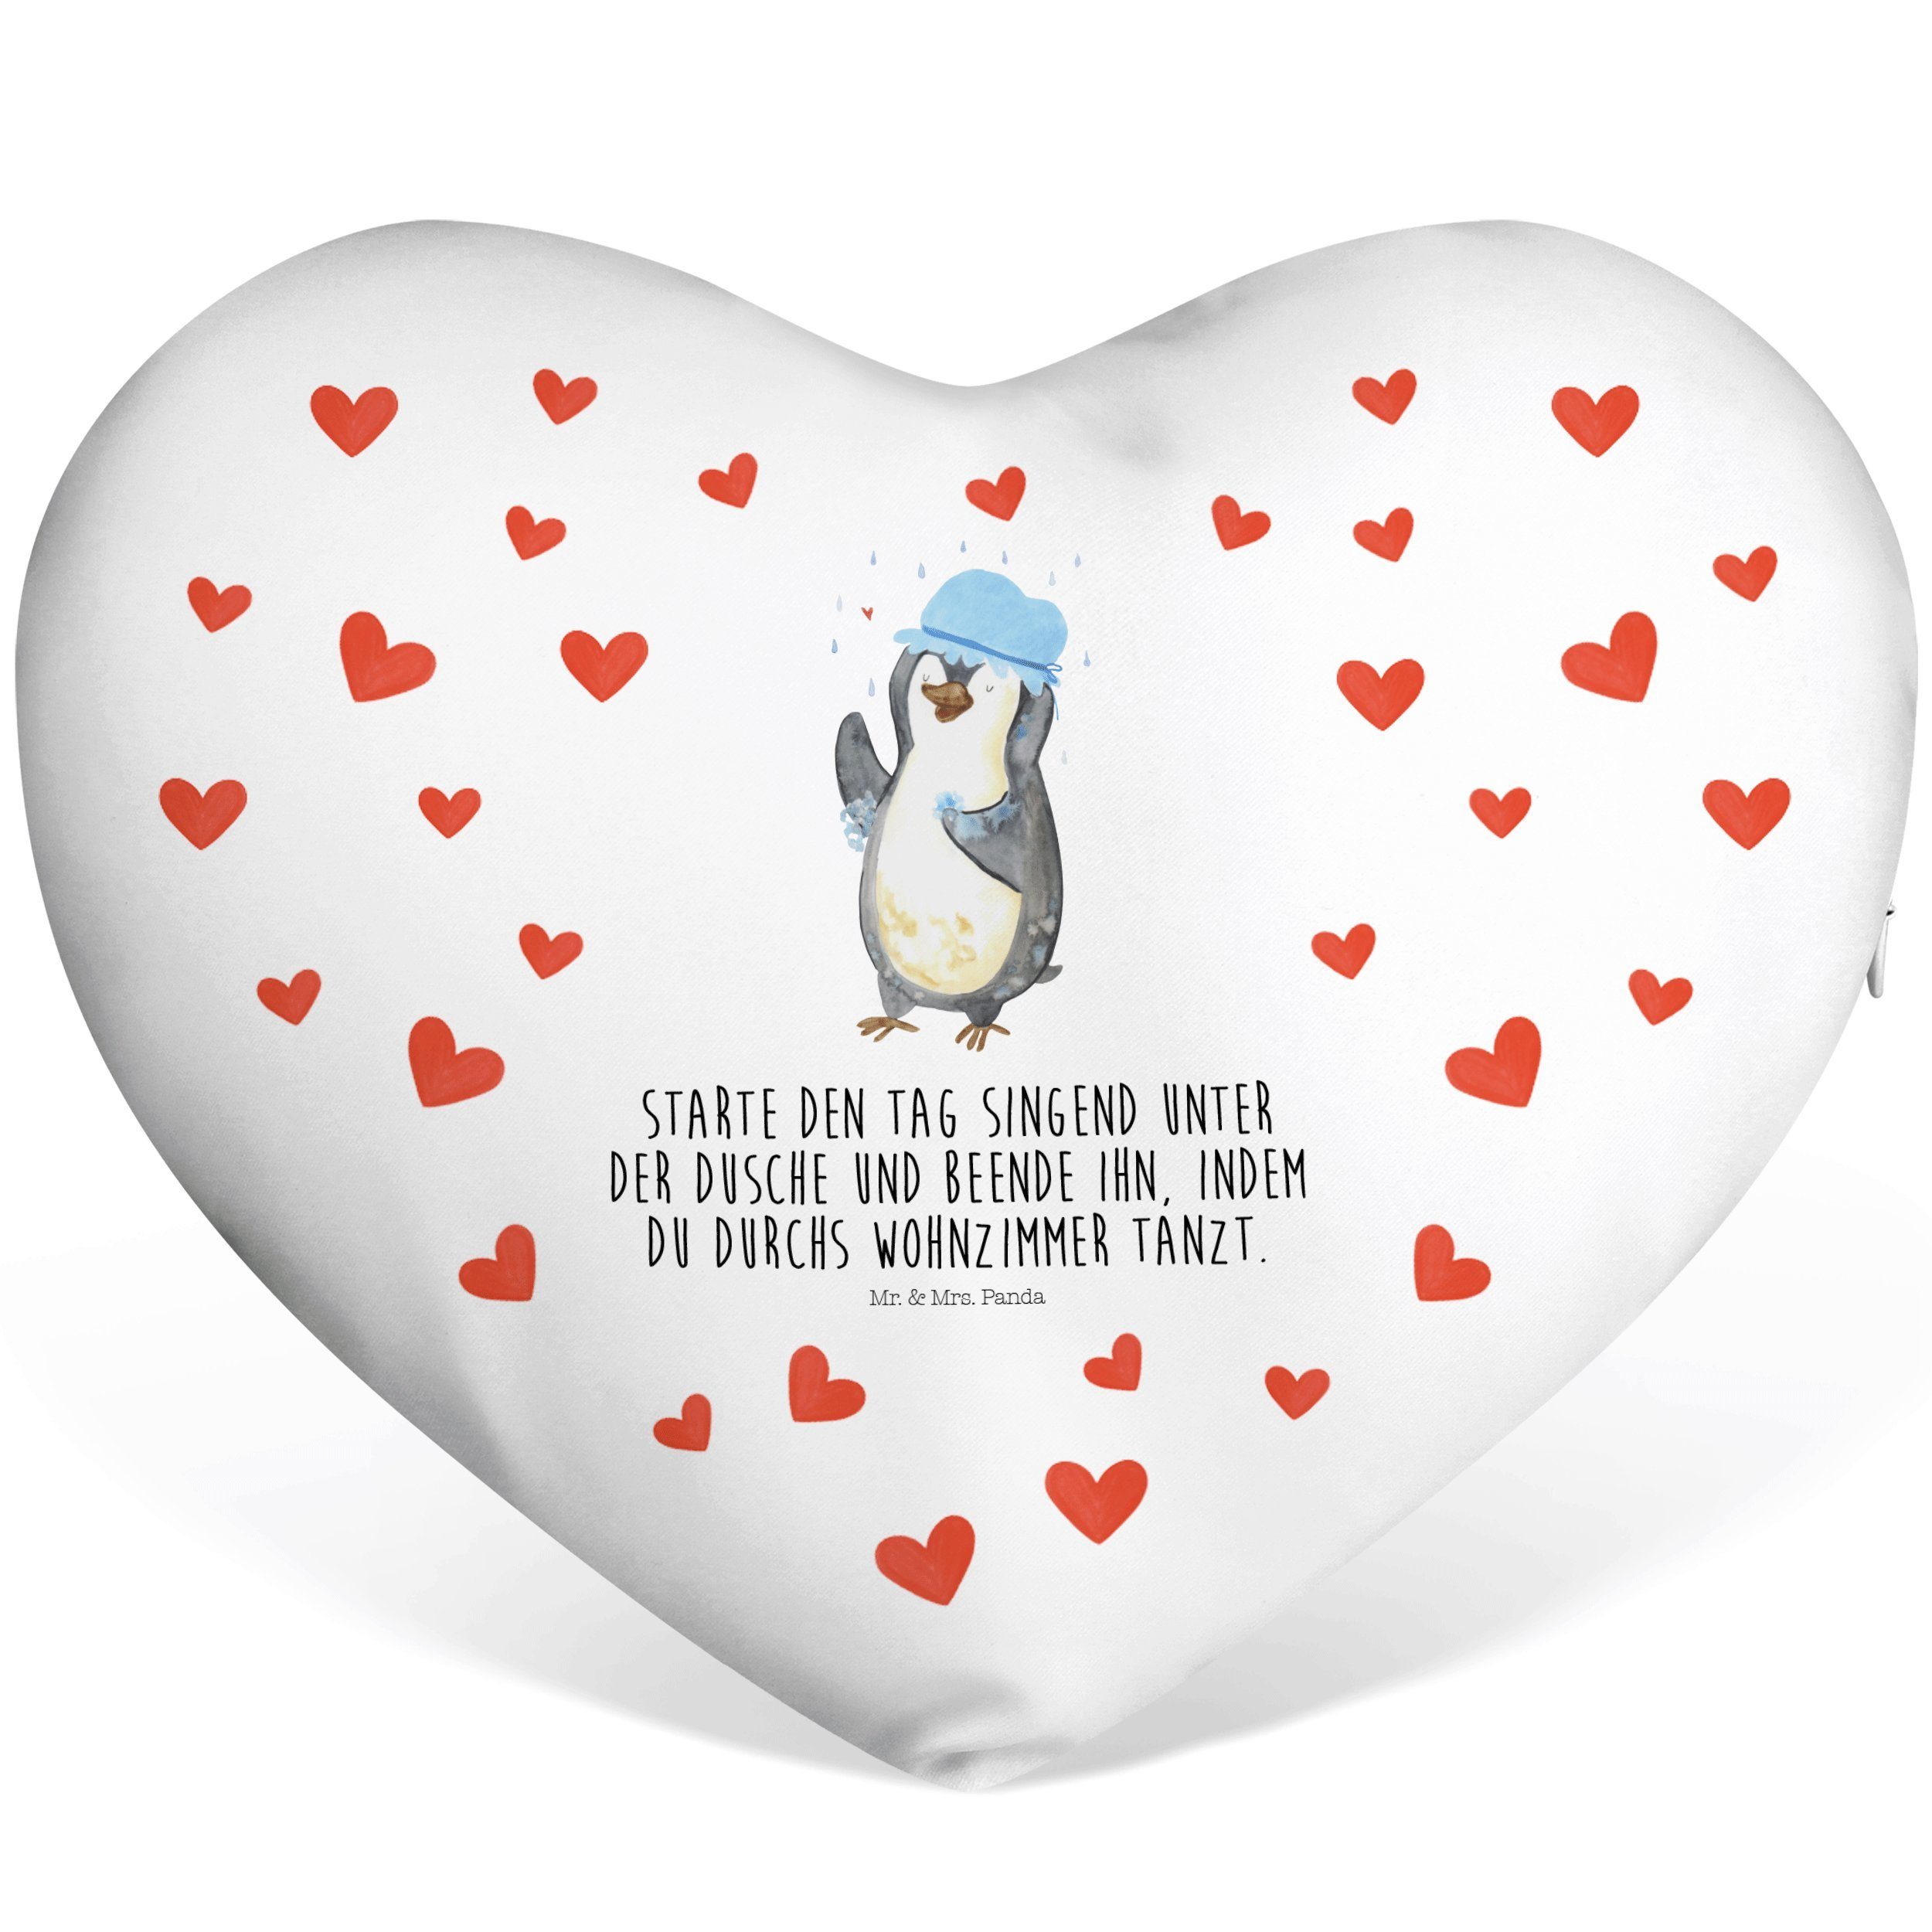 Mr. & Mrs. Panda Dekokissen Pinguin duscht - Weiß - Geschenk, Herz, duschen, Herzkissen, Motivati